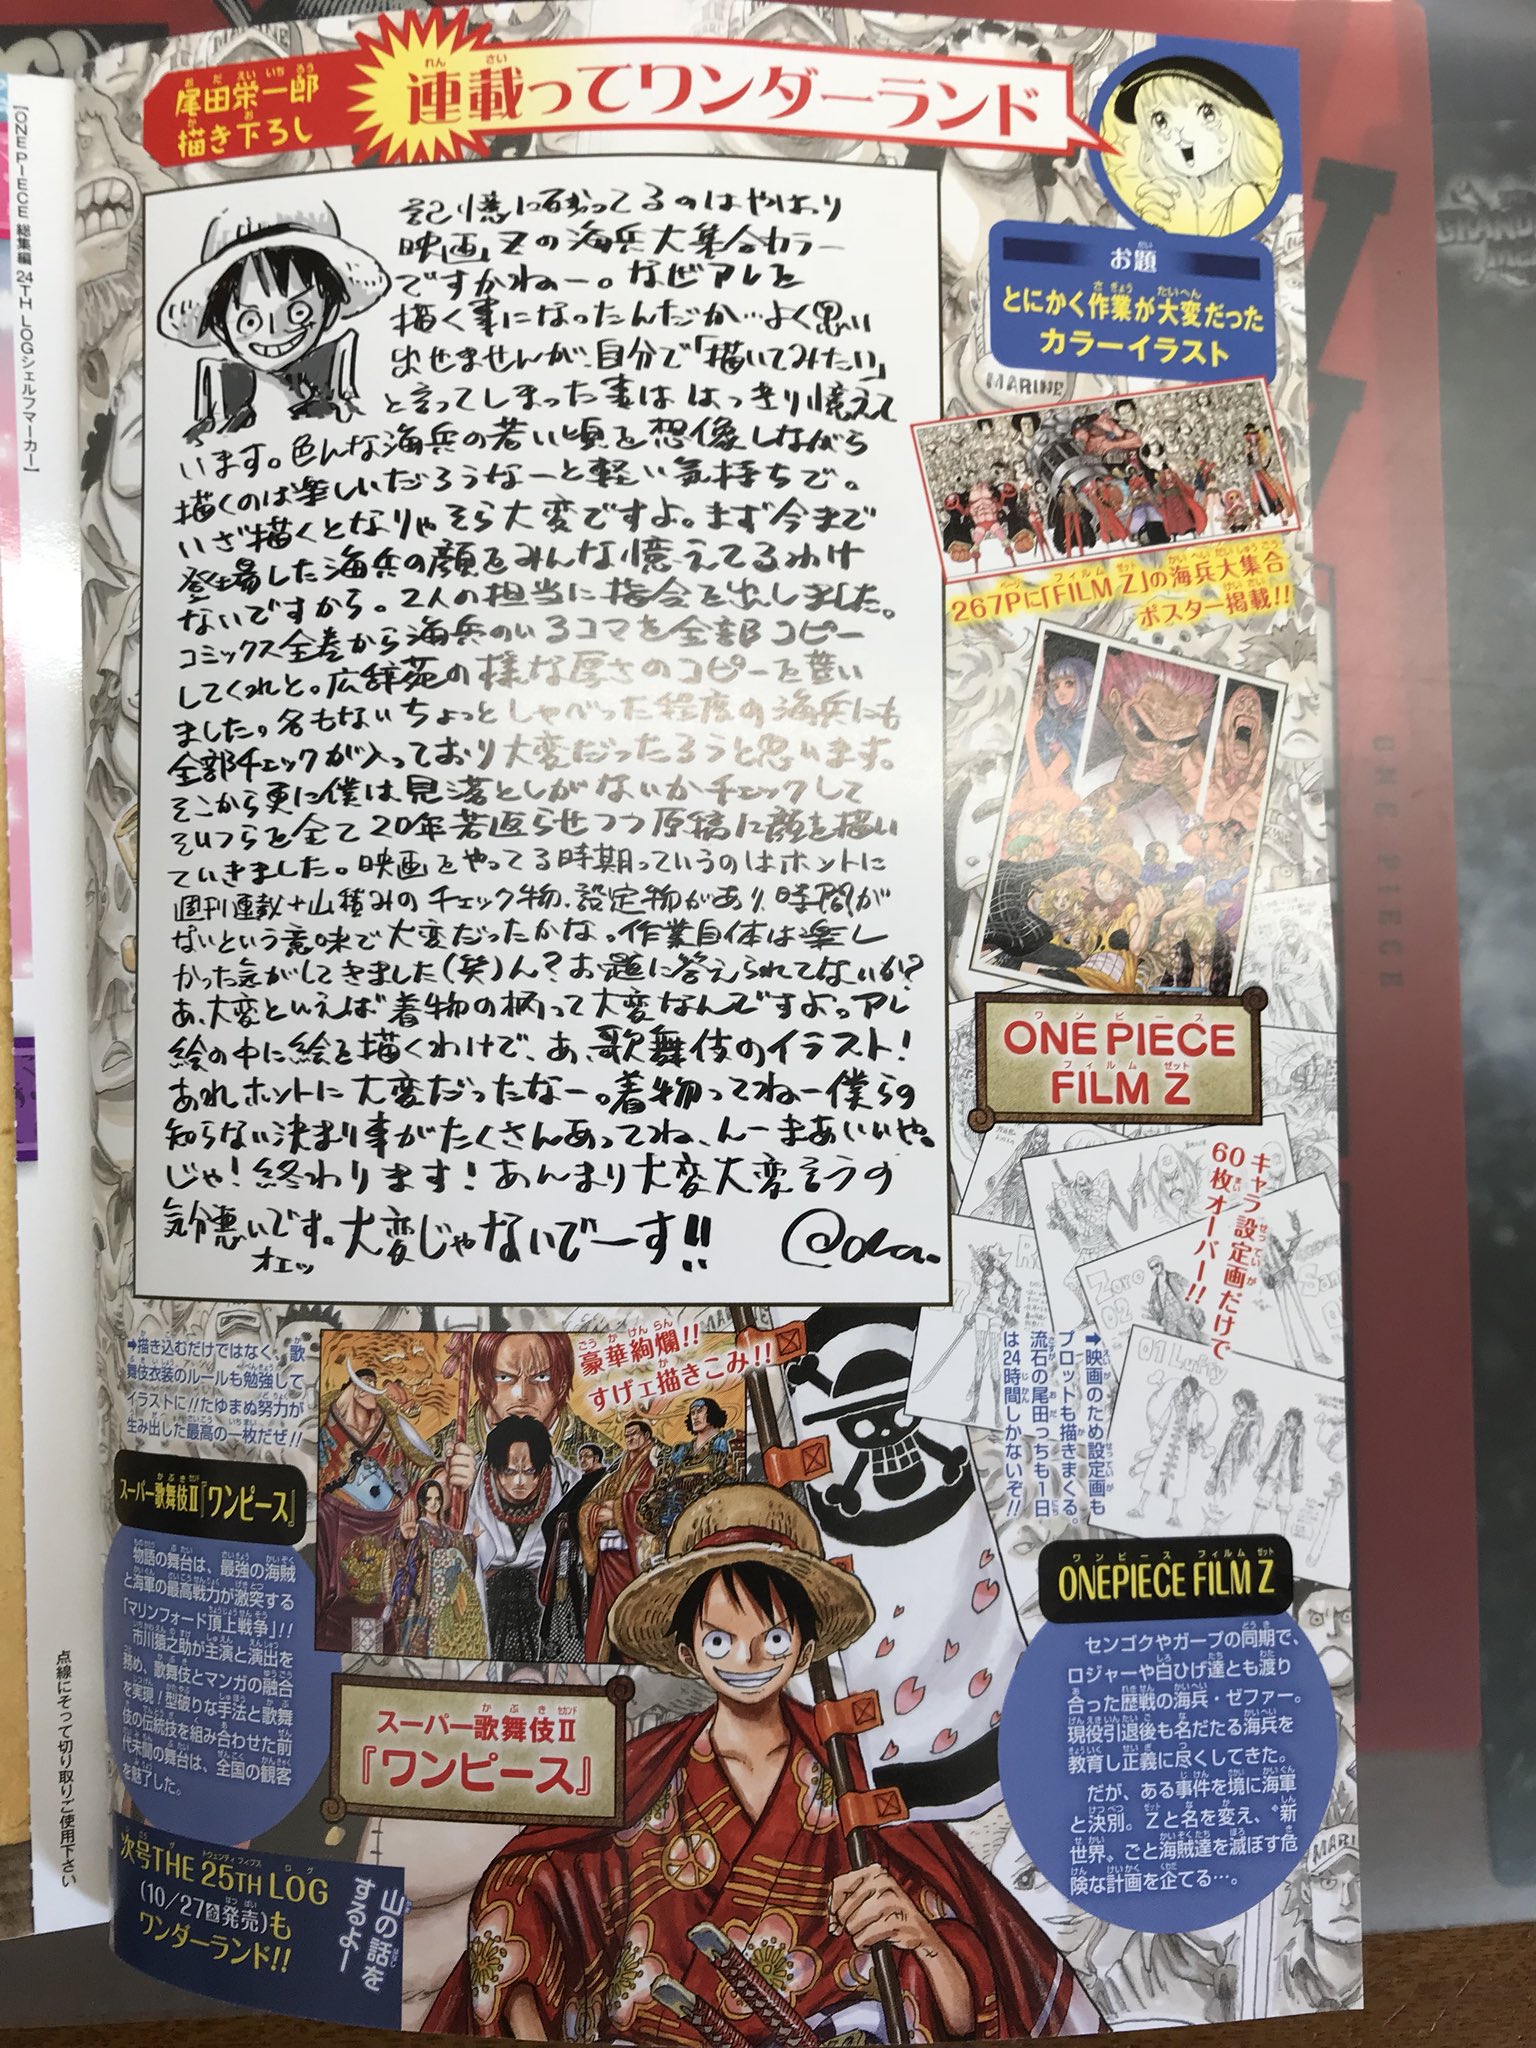 信頼 One Piece総集編 1 28 ワンピース新聞と周年突破のチラシ付き 時間指定不可 Haisha Co Jp